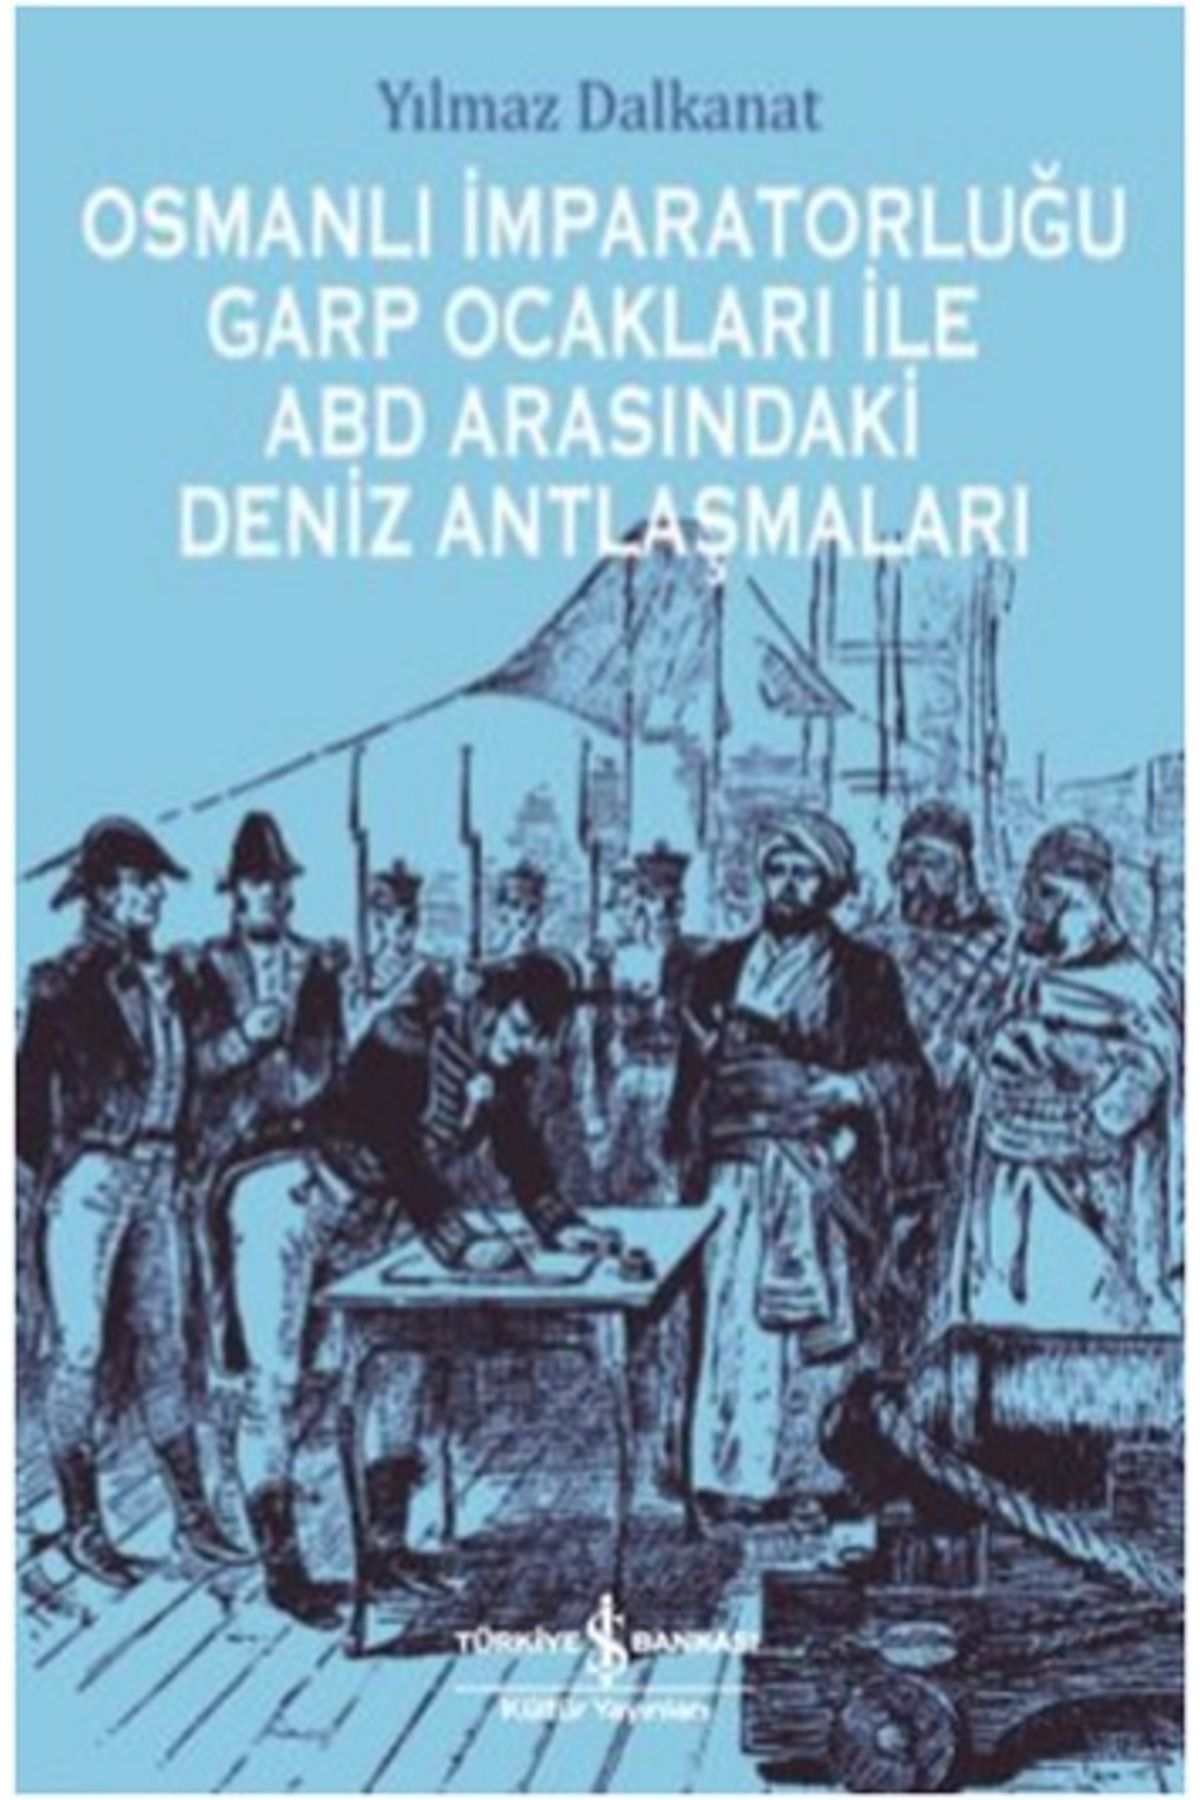 Türkiye İş Bankası Kültür Yayınları Osmanlı İmparatorluğu Garp Ocakları İle Abd Arasındaki Deniz Antlaşmaları